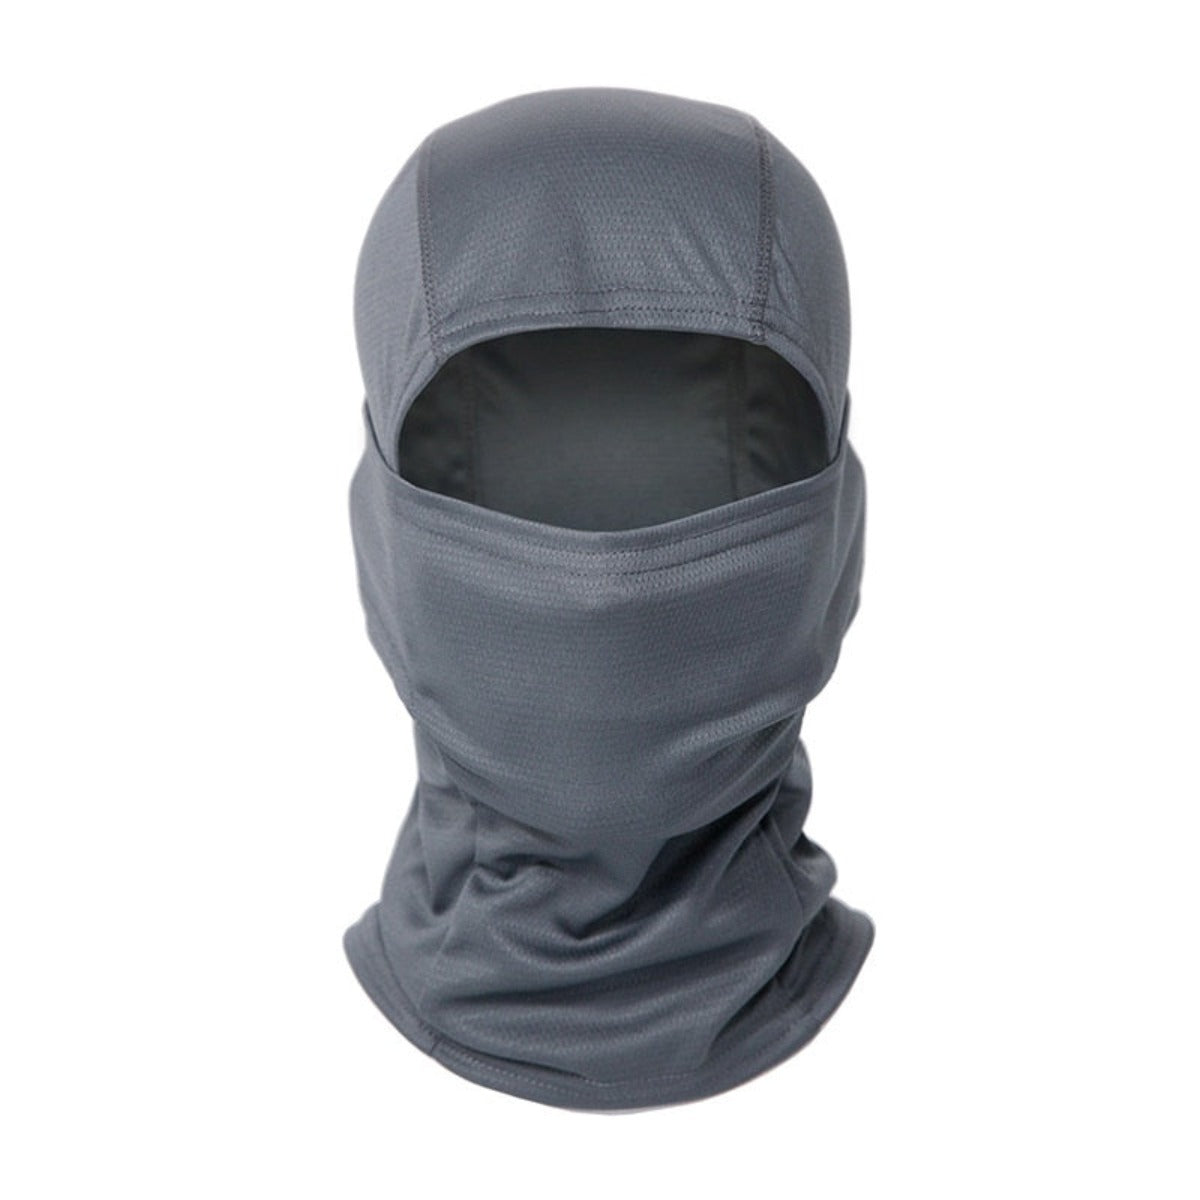 MultiCam Full Face Mask Cover - Urban Gray